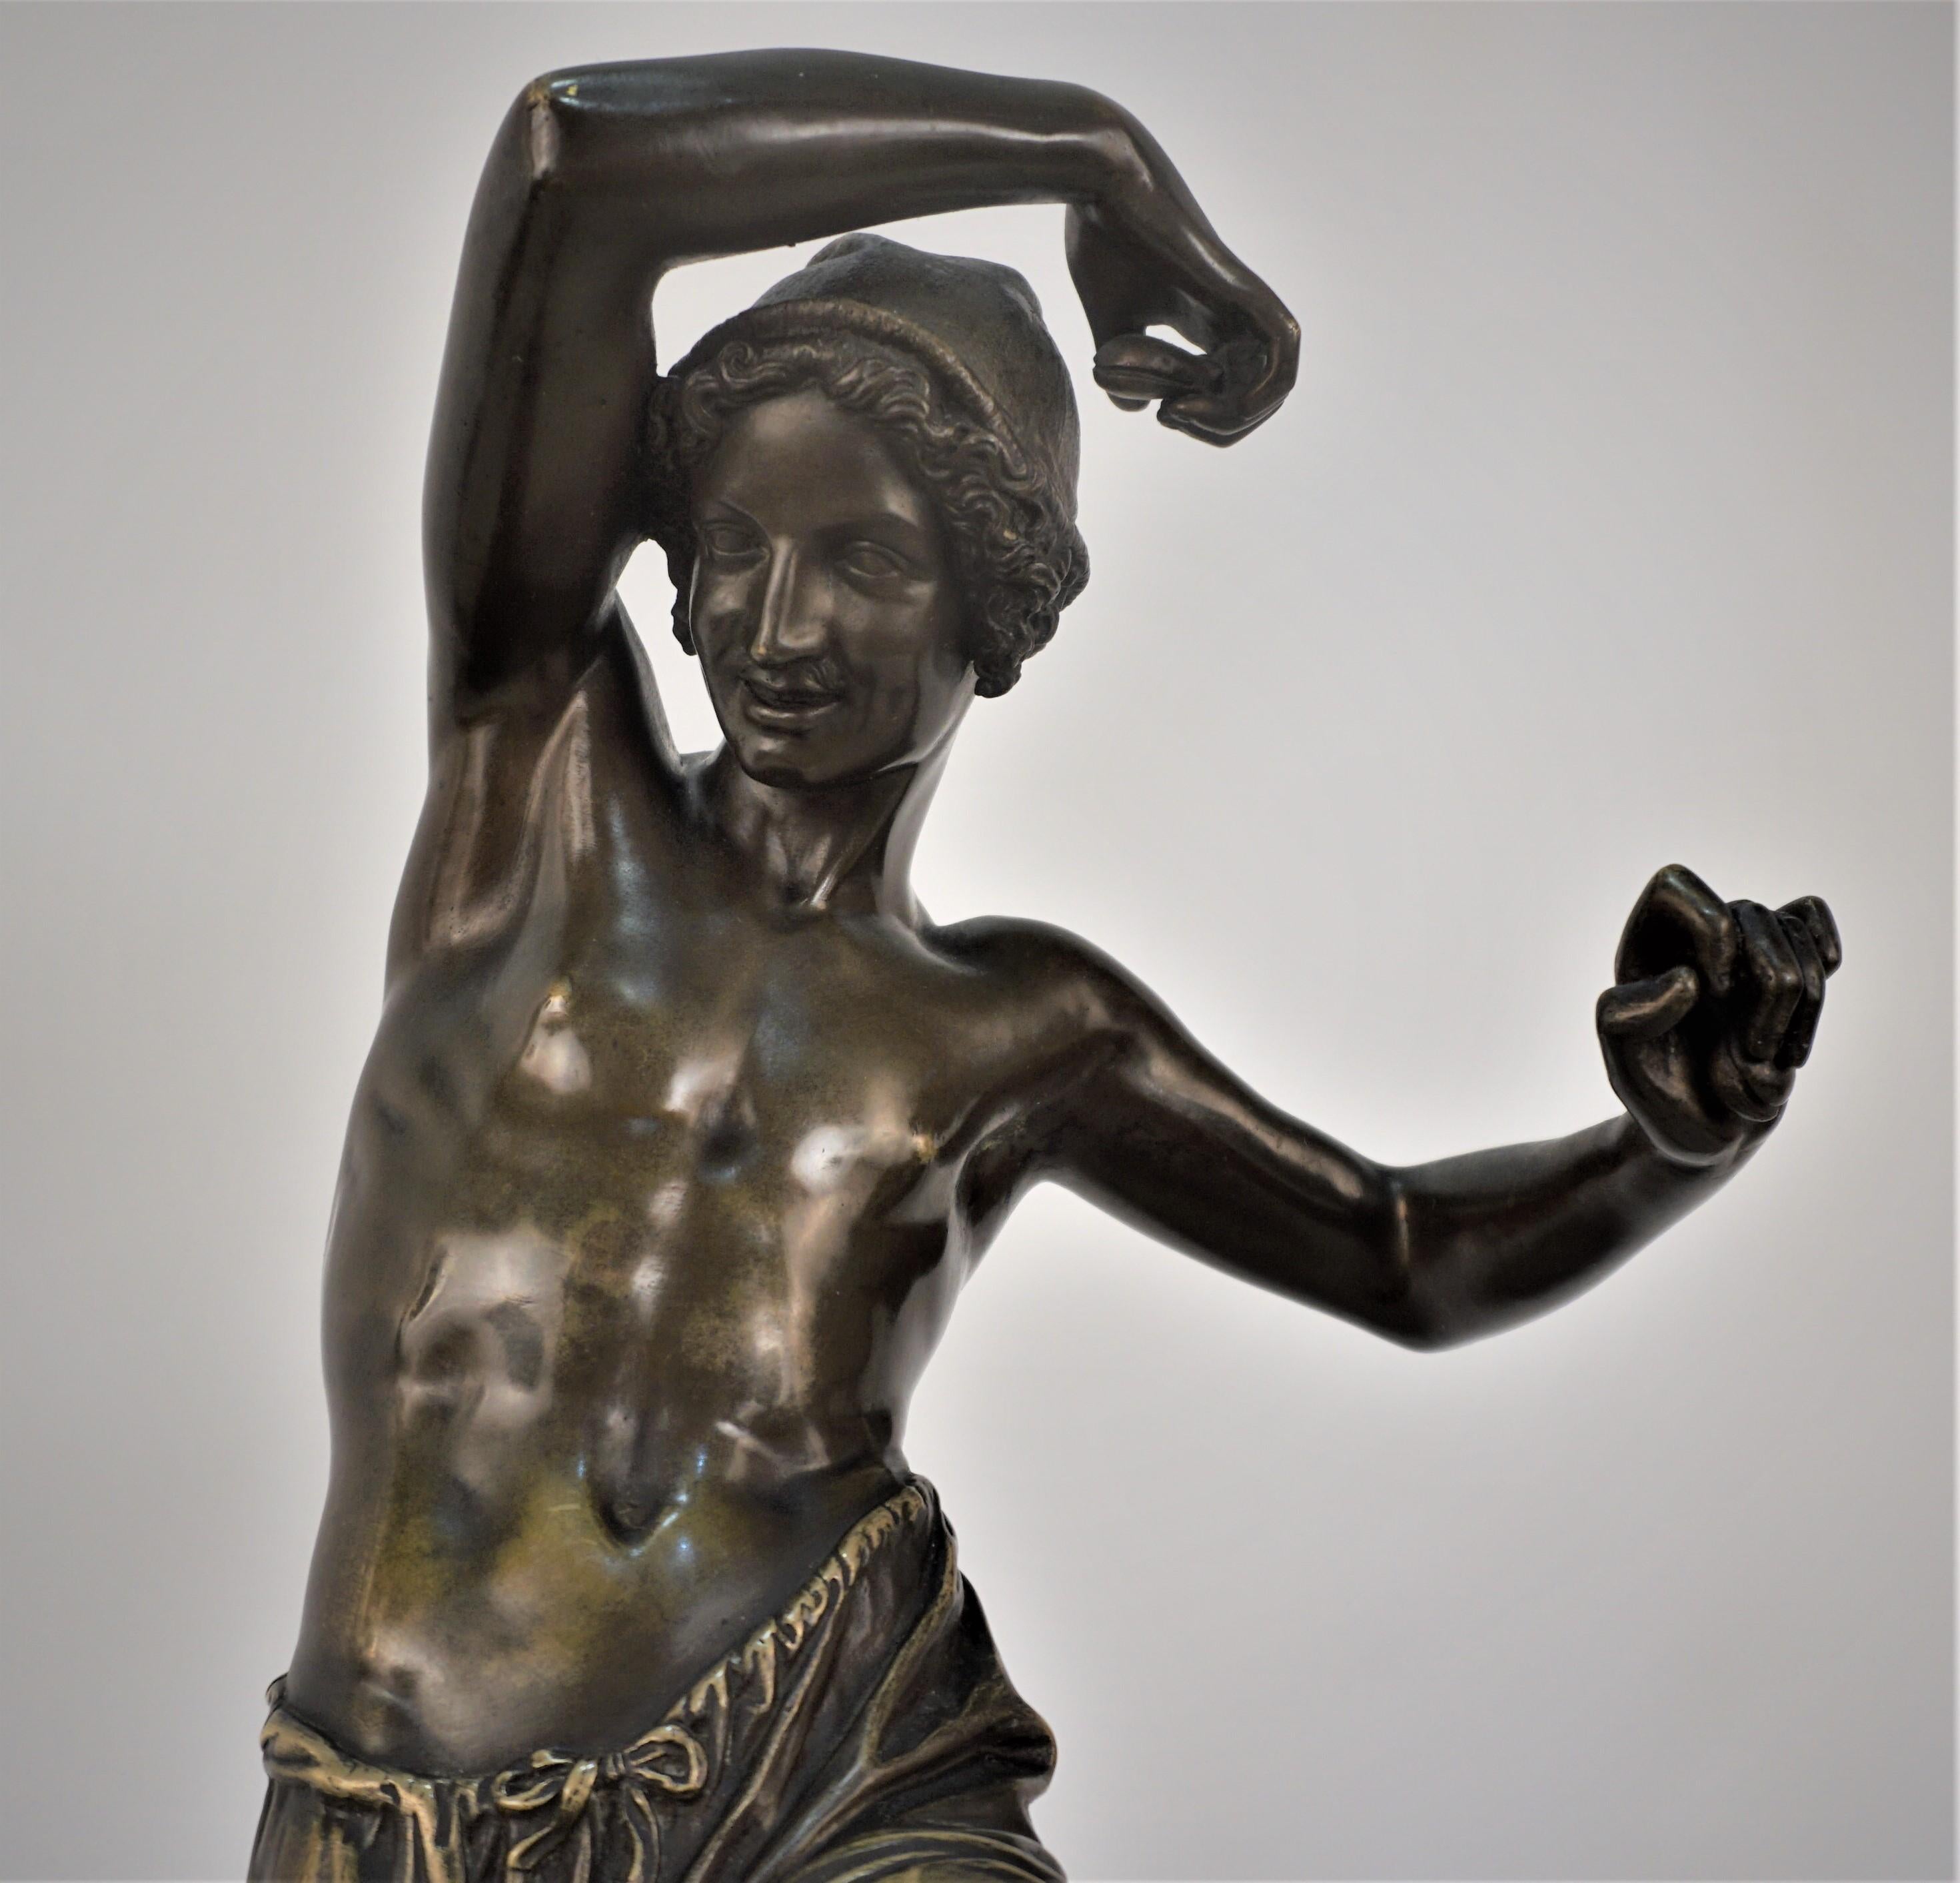 Neapolitanische Tänzerin aus Bronze mit Kastagnetten, gemarkt Duret F.
Nach Francisque Joseph Duret (Französisch, 1805-1865)
Gegossen von Delafontaine nach einer Form von Francisque Joseph Duret.